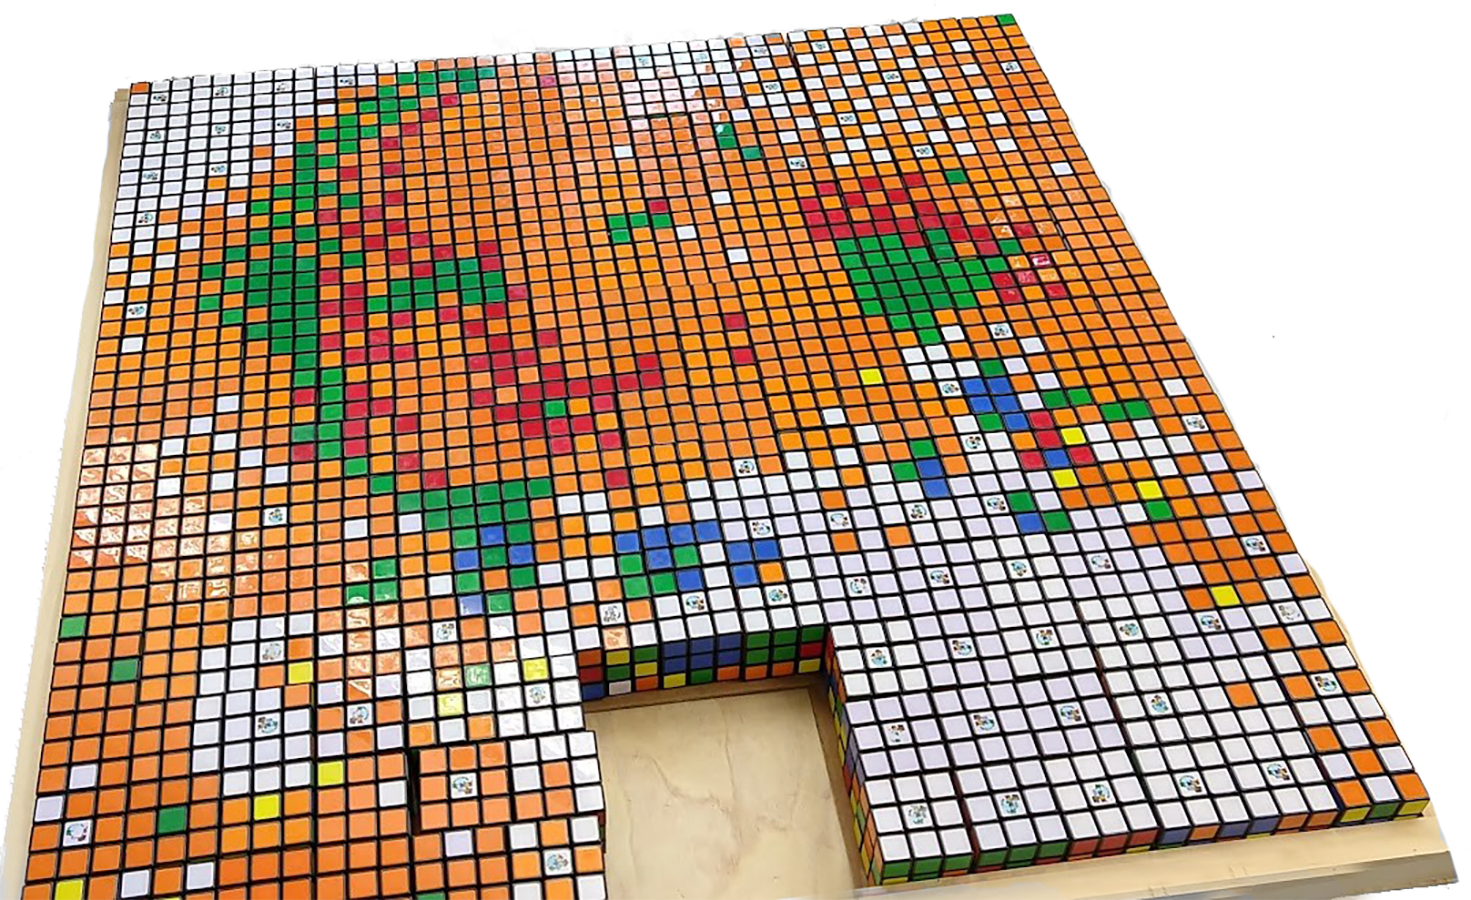 Rubiks001-crop.png